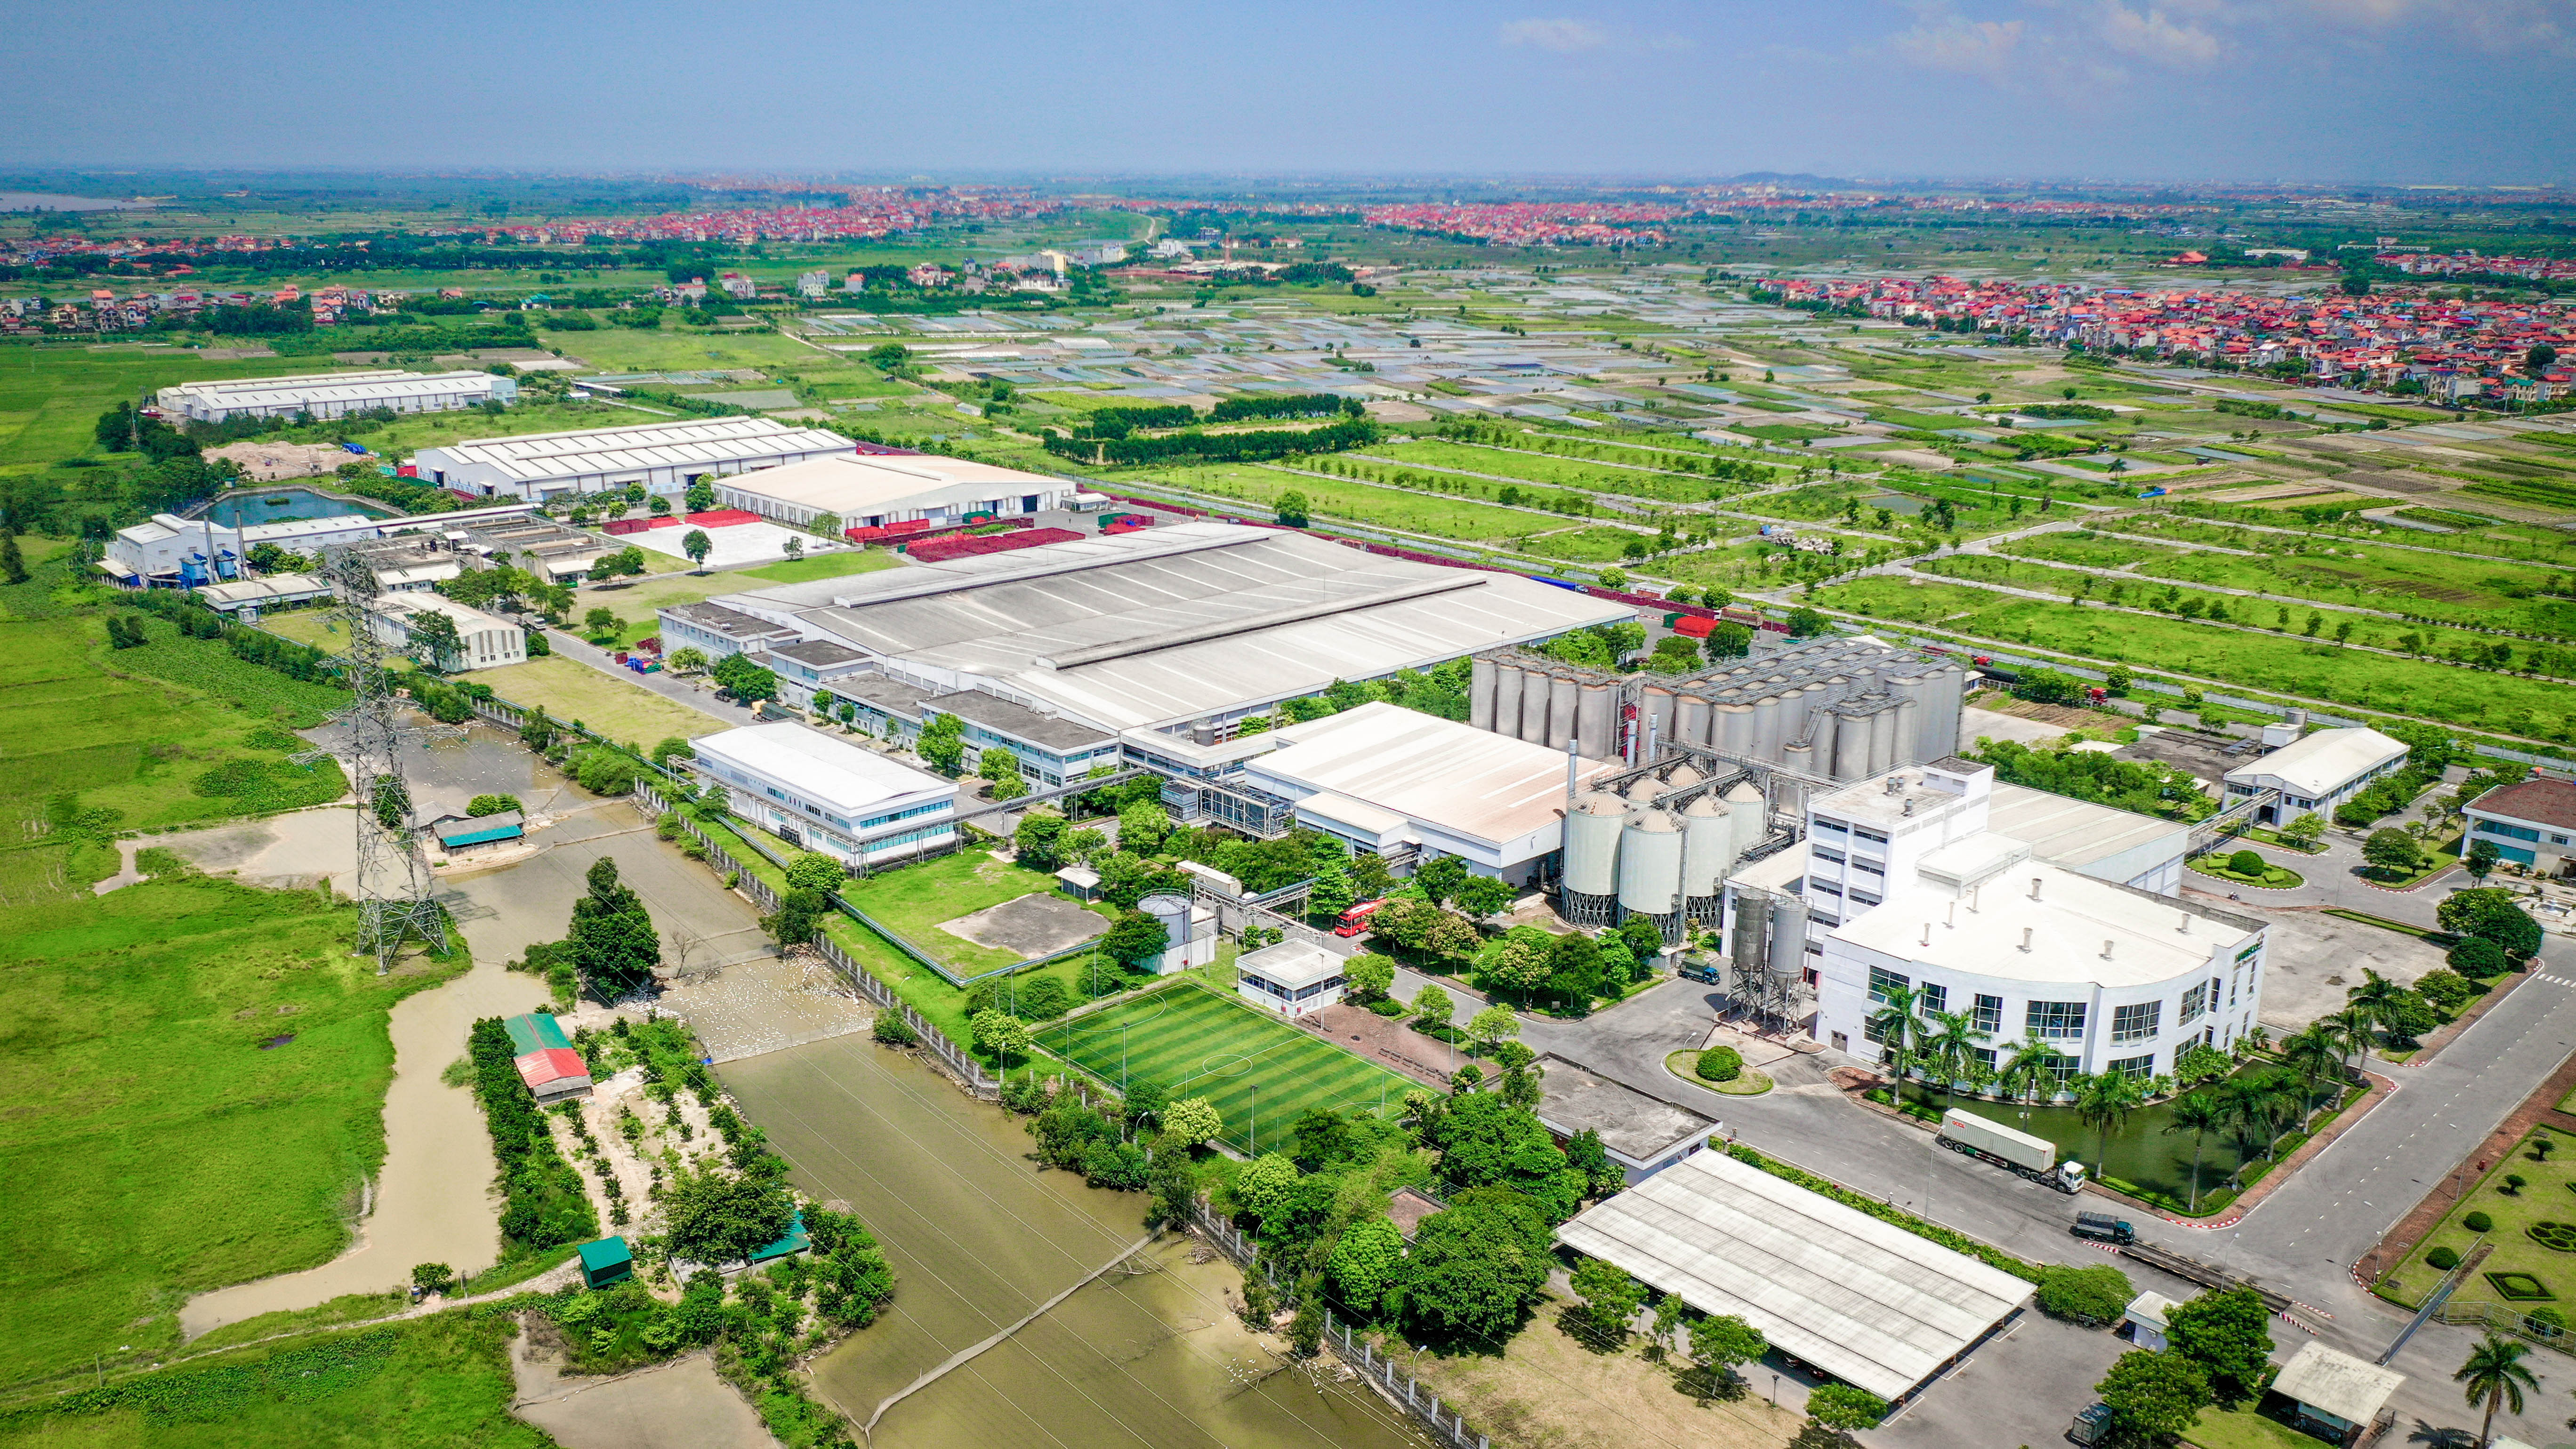 Nhà máy bia Hà Nội - Mê Linh đặt mục tiêu giảm 2% tiêu hao năng lượng hàng năm